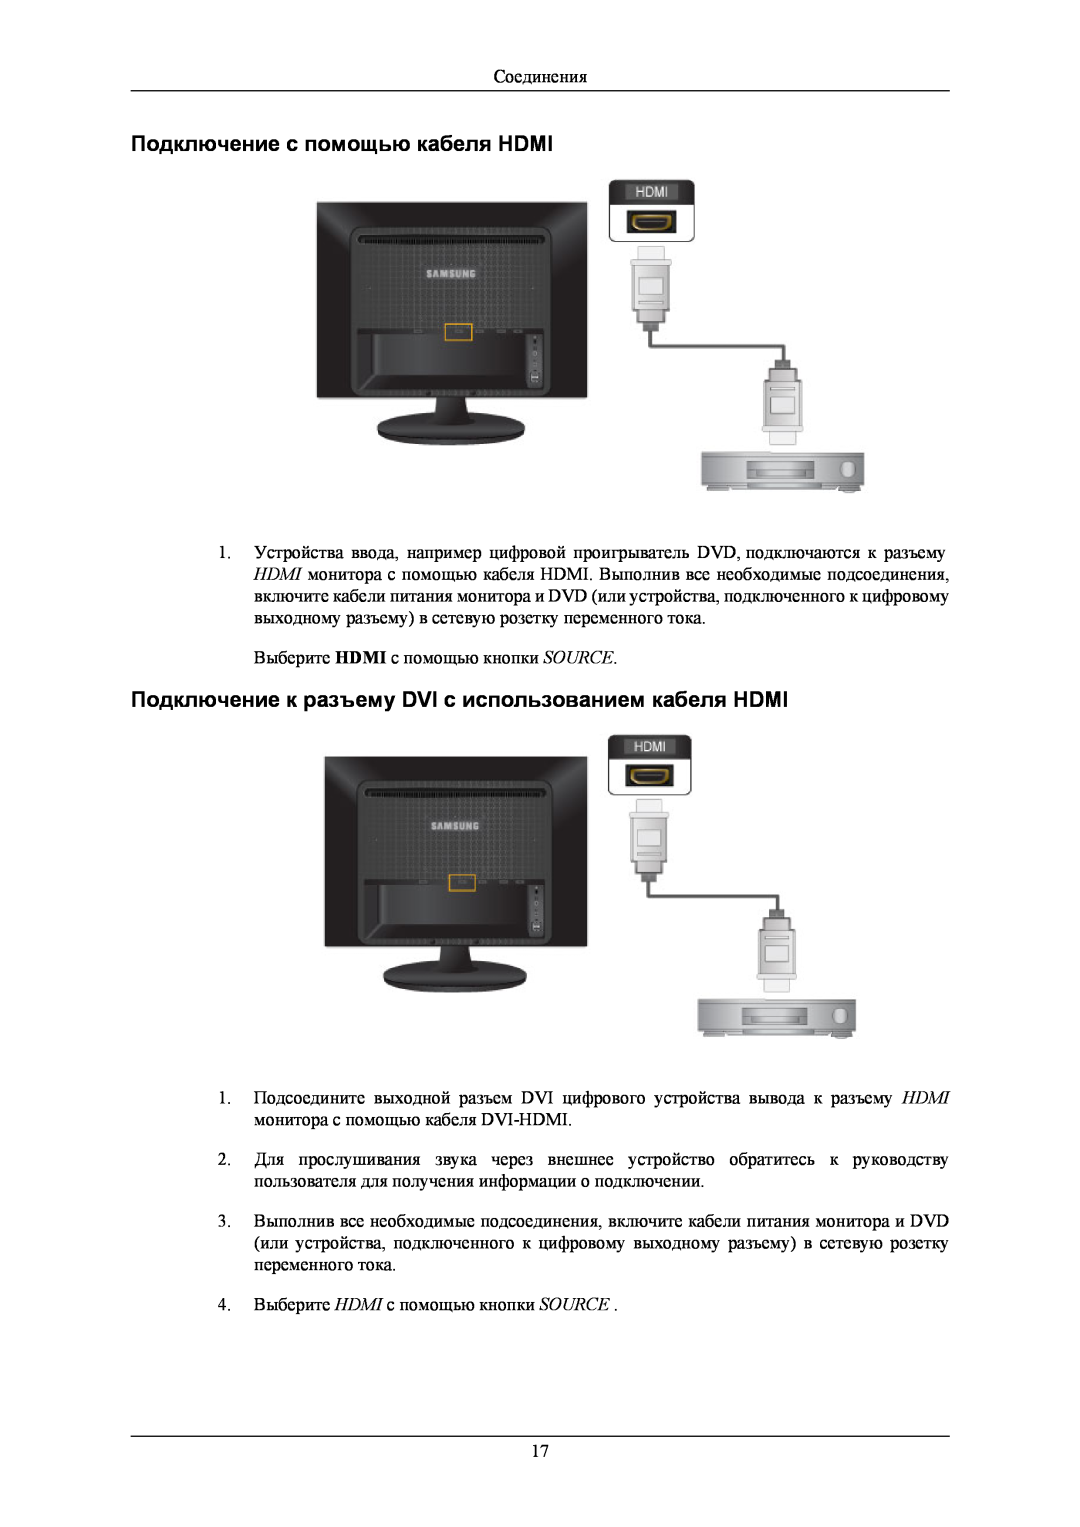 Samsung LS24LIUJFV/EN manual Подключение с помощью кабеля HDMI, Подключение к разъему DVI с использованием кабеля HDMI 